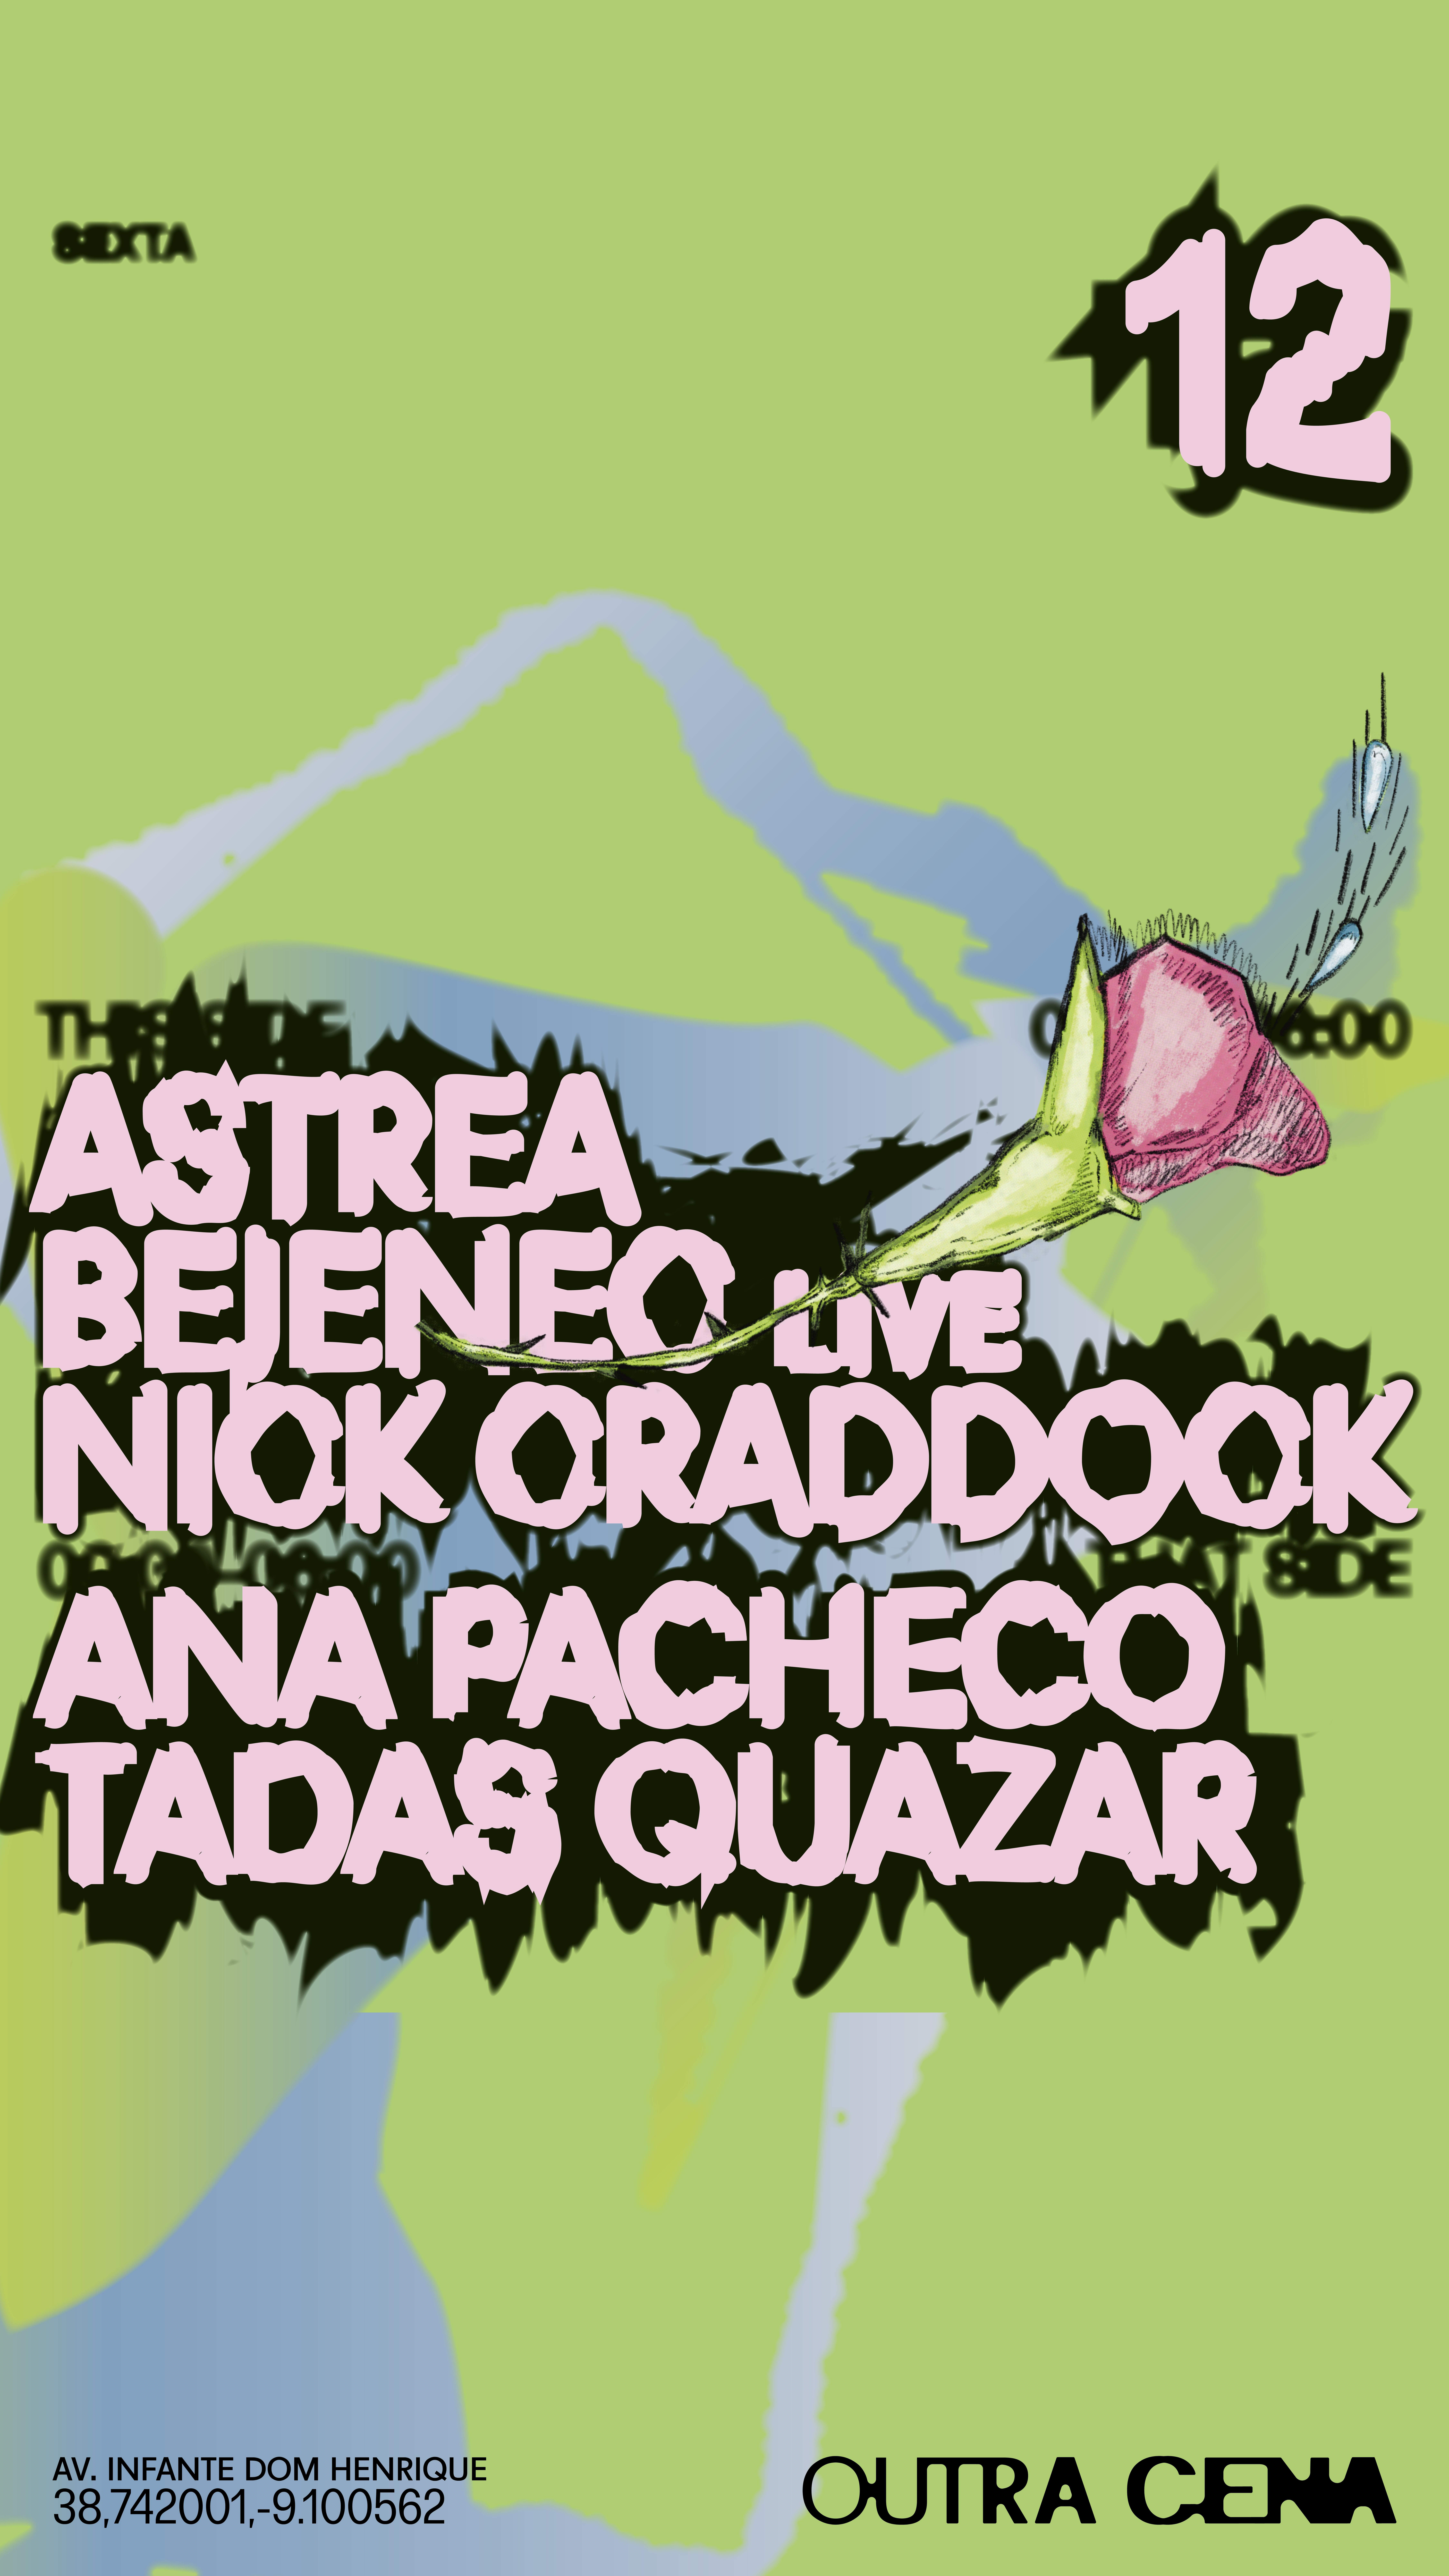 Ana Pacheco, Astrea, Bejenec live, Nick Craddock, Tadas Quazar - フライヤー裏